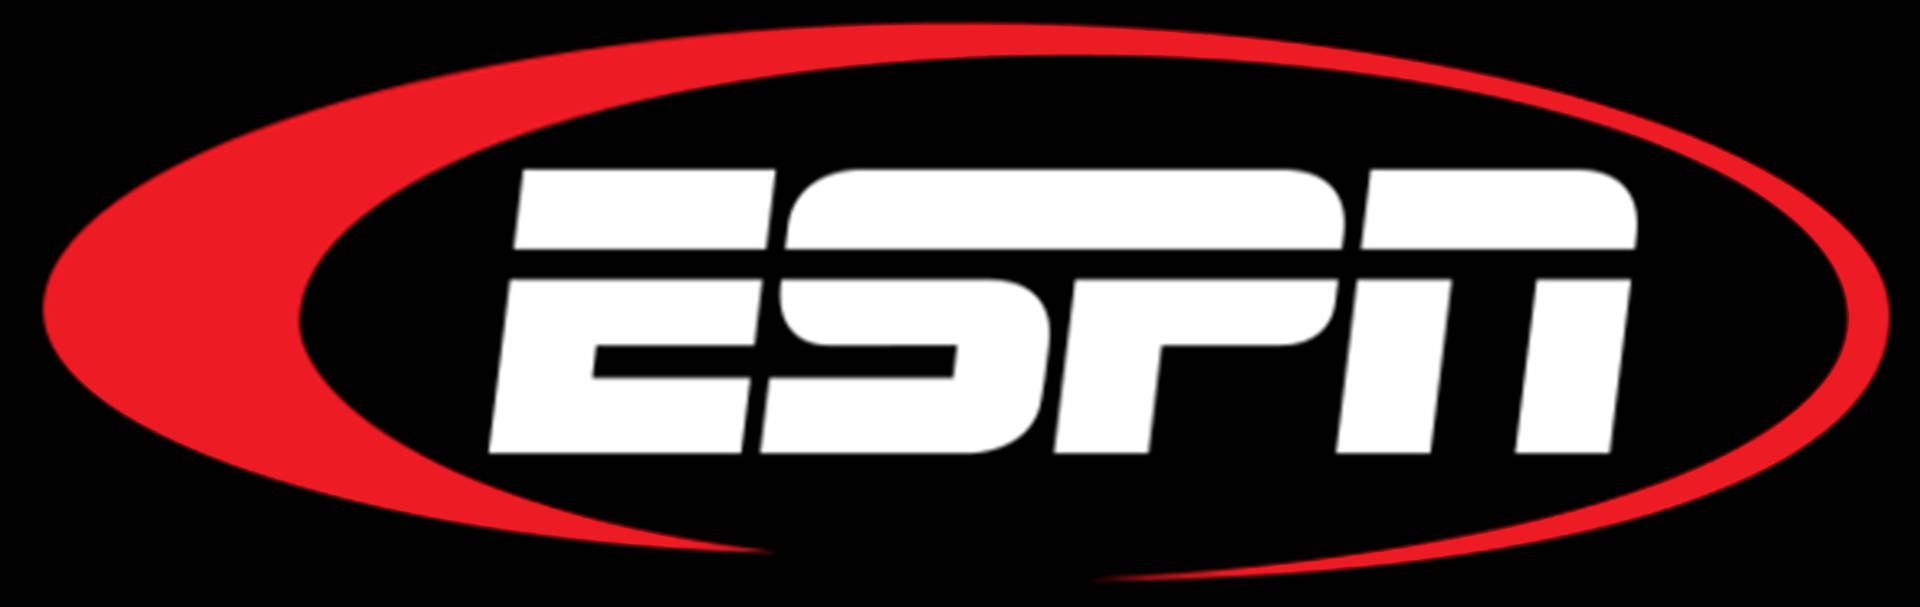 Espn Oval-shaped Logo Background